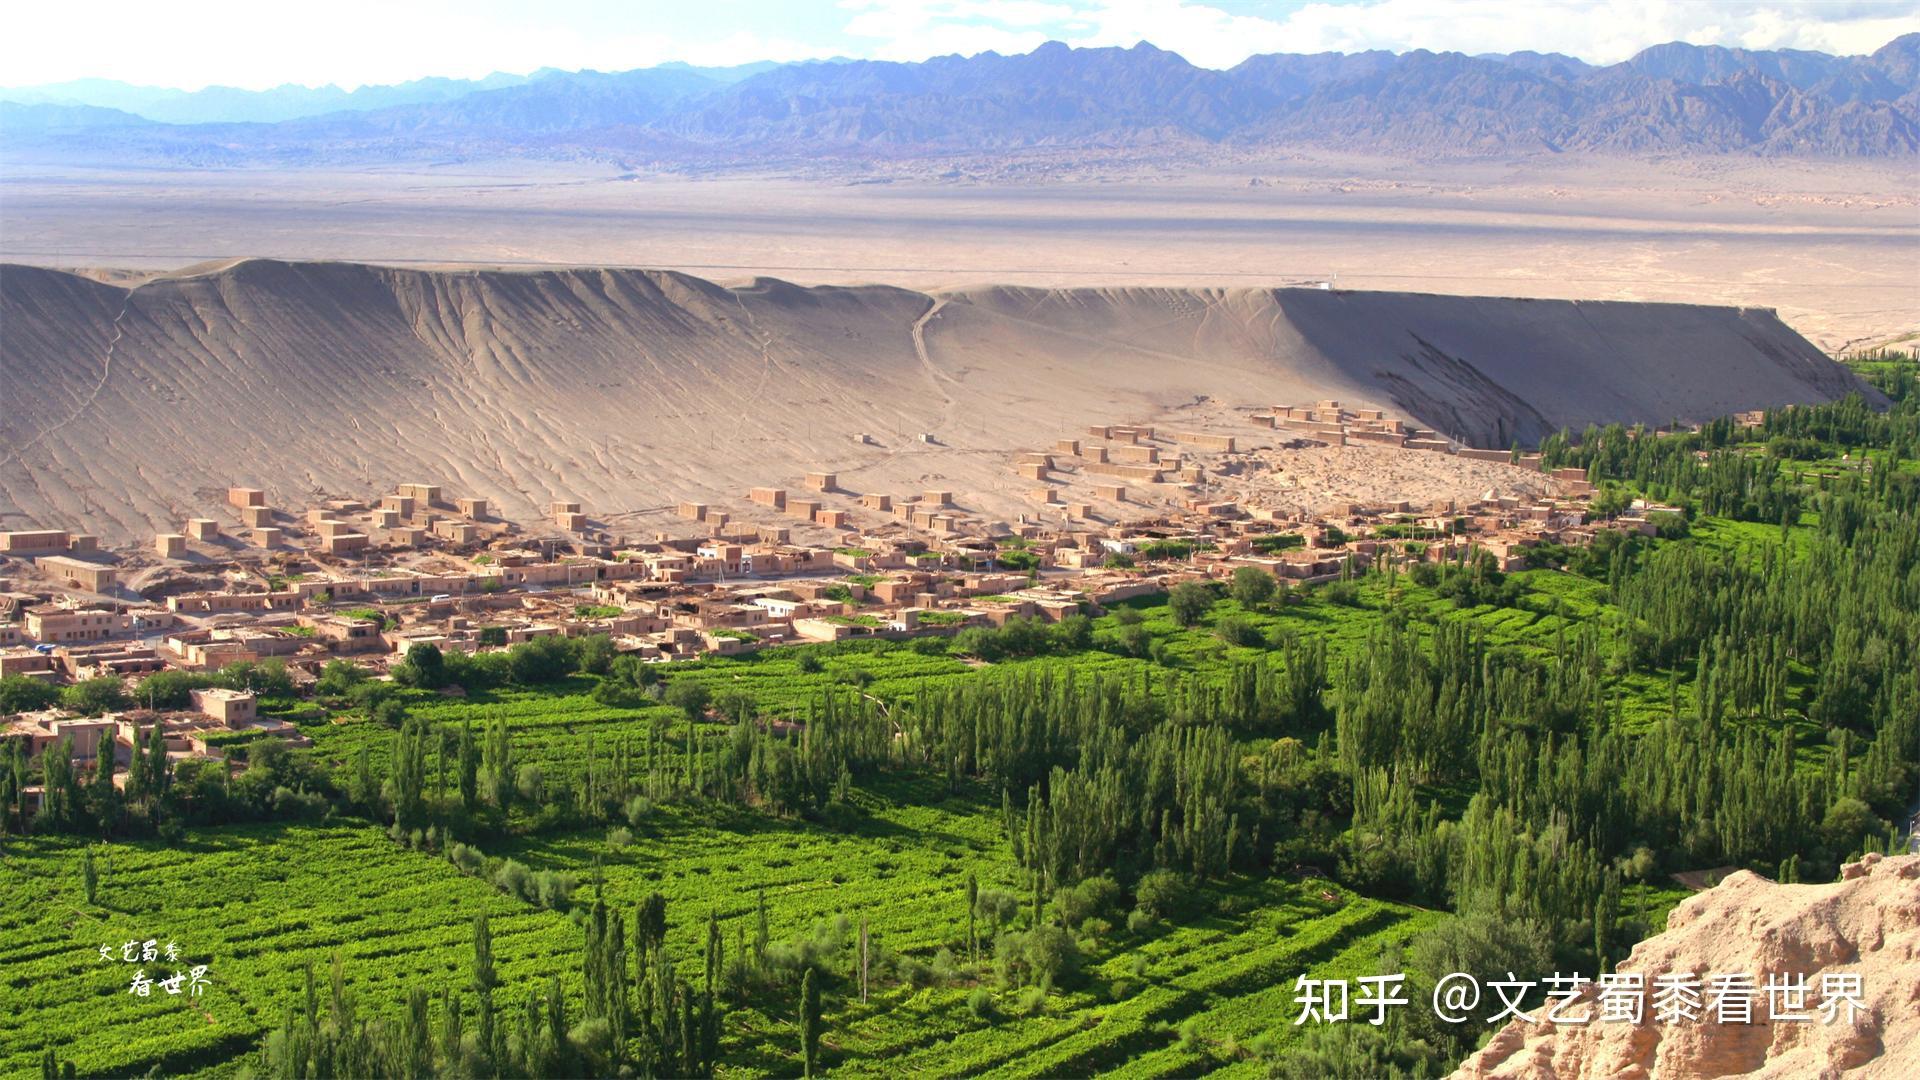 吐鲁番民居 - 吐鲁番景点 - 华侨城旅游网